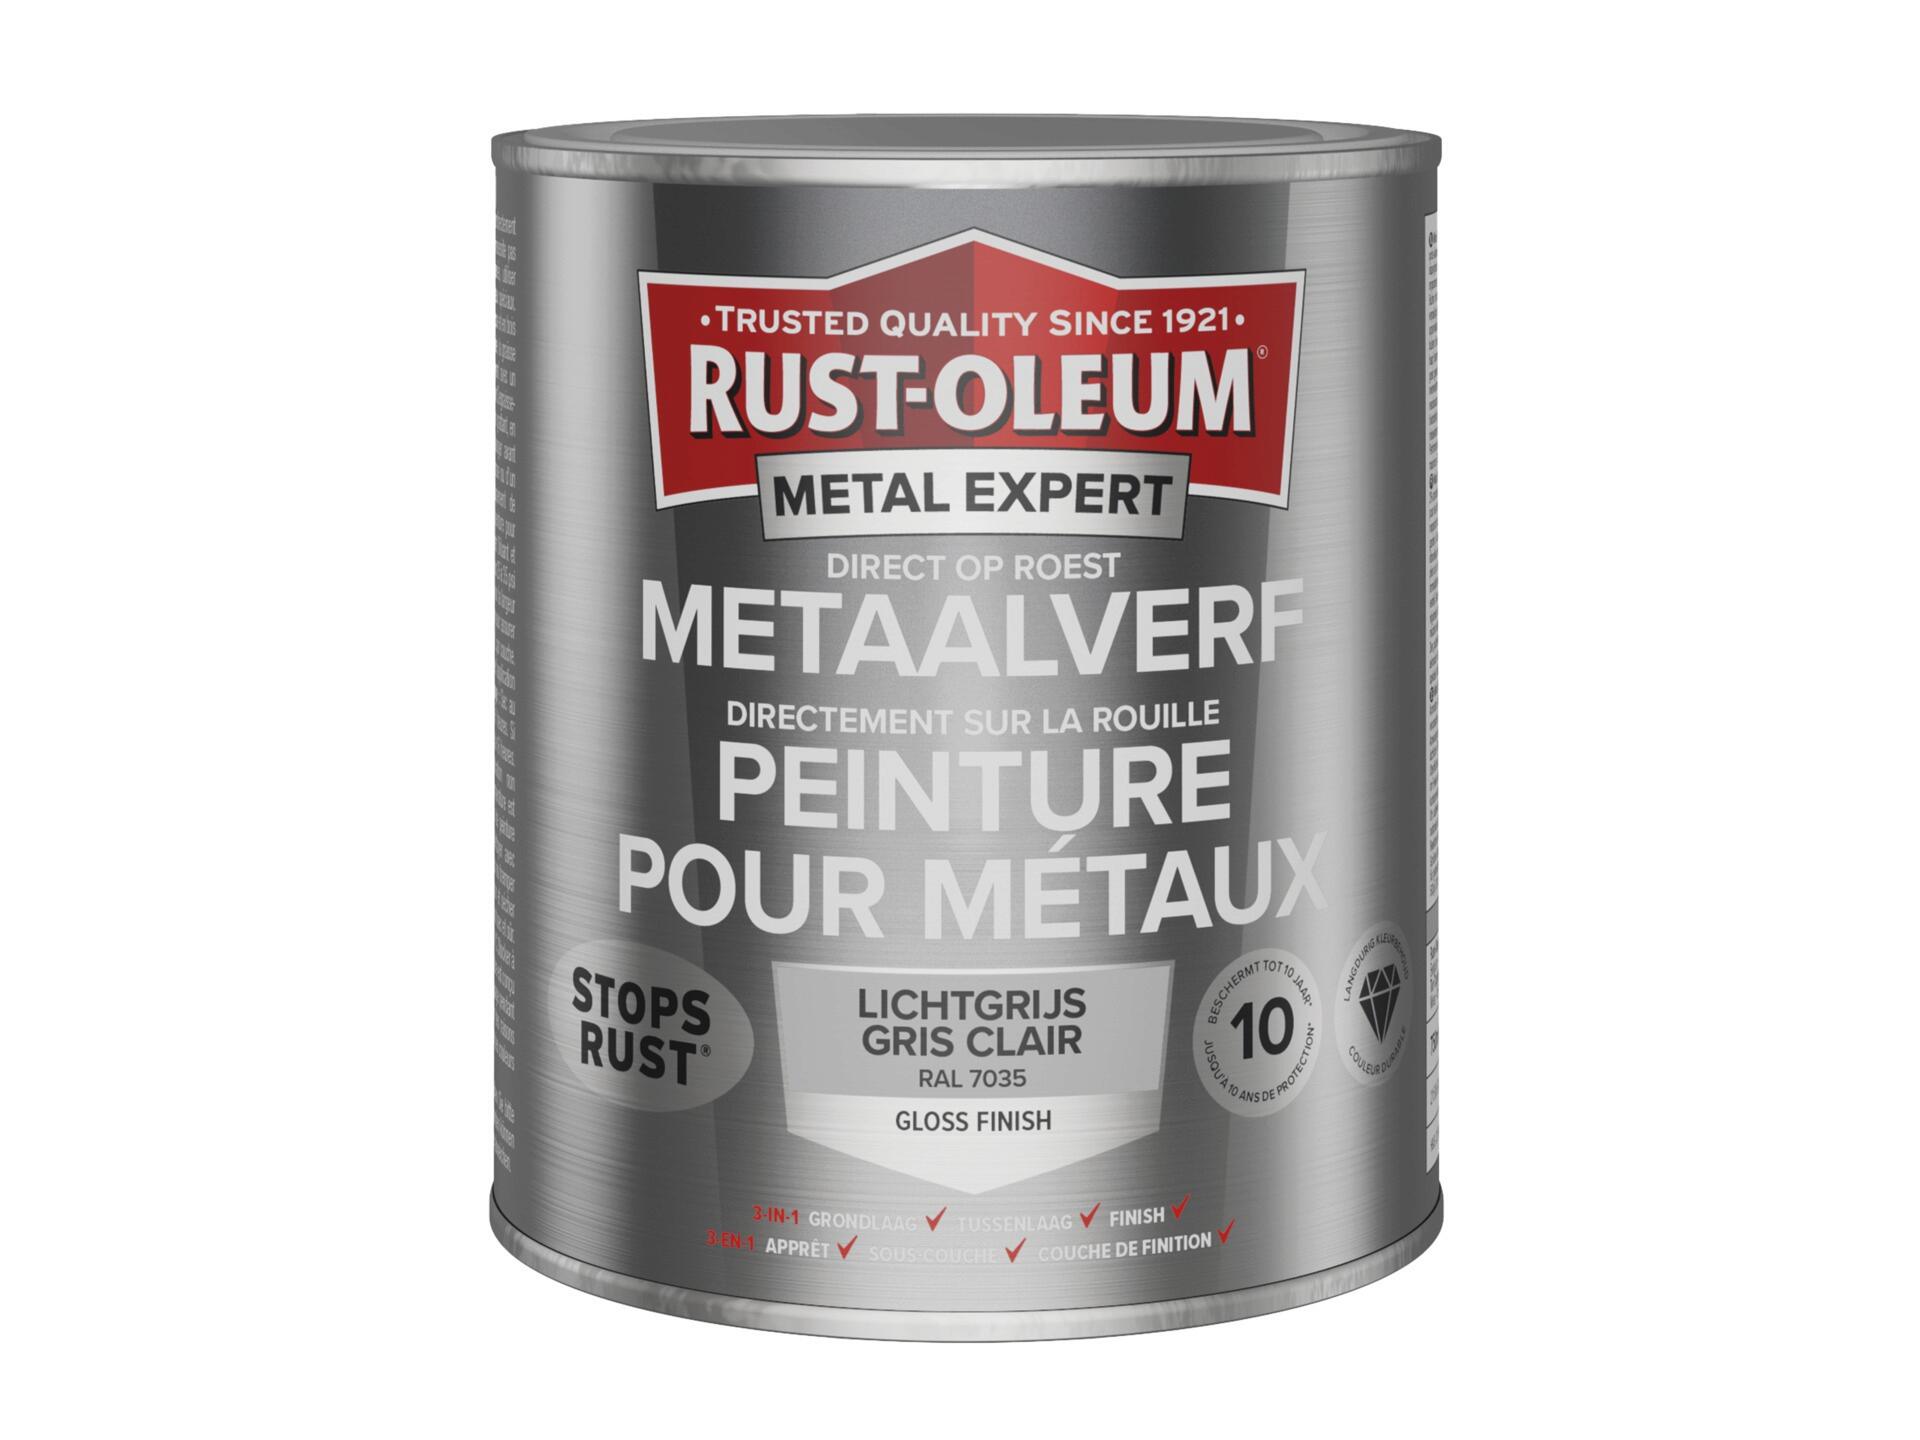 Rust-oleum Metal Expert peinture pour métaux brillant 750ml gris clair